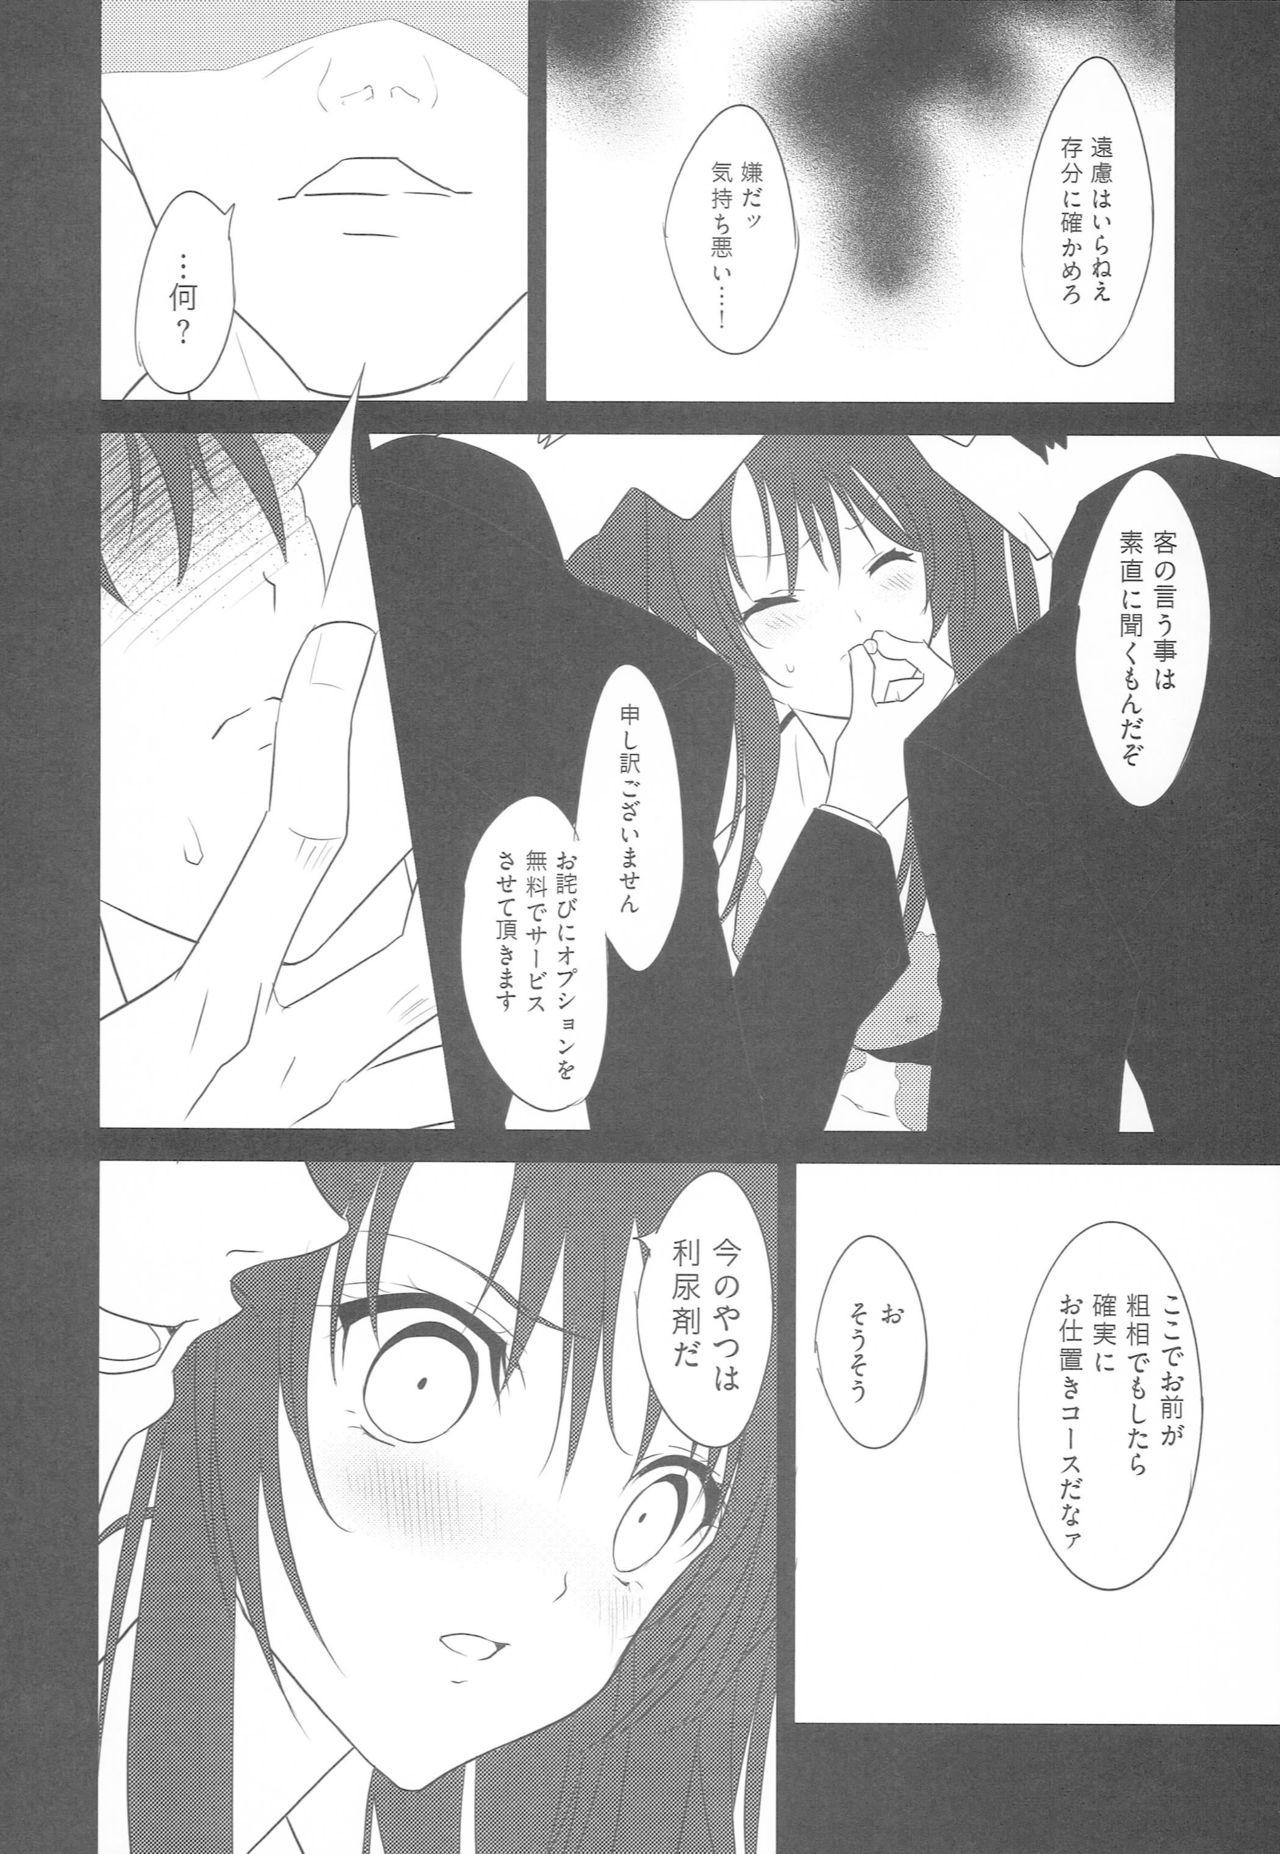 3some Nana Man Gald de Damasareru - Tales of destiny 2 Show - Page 5